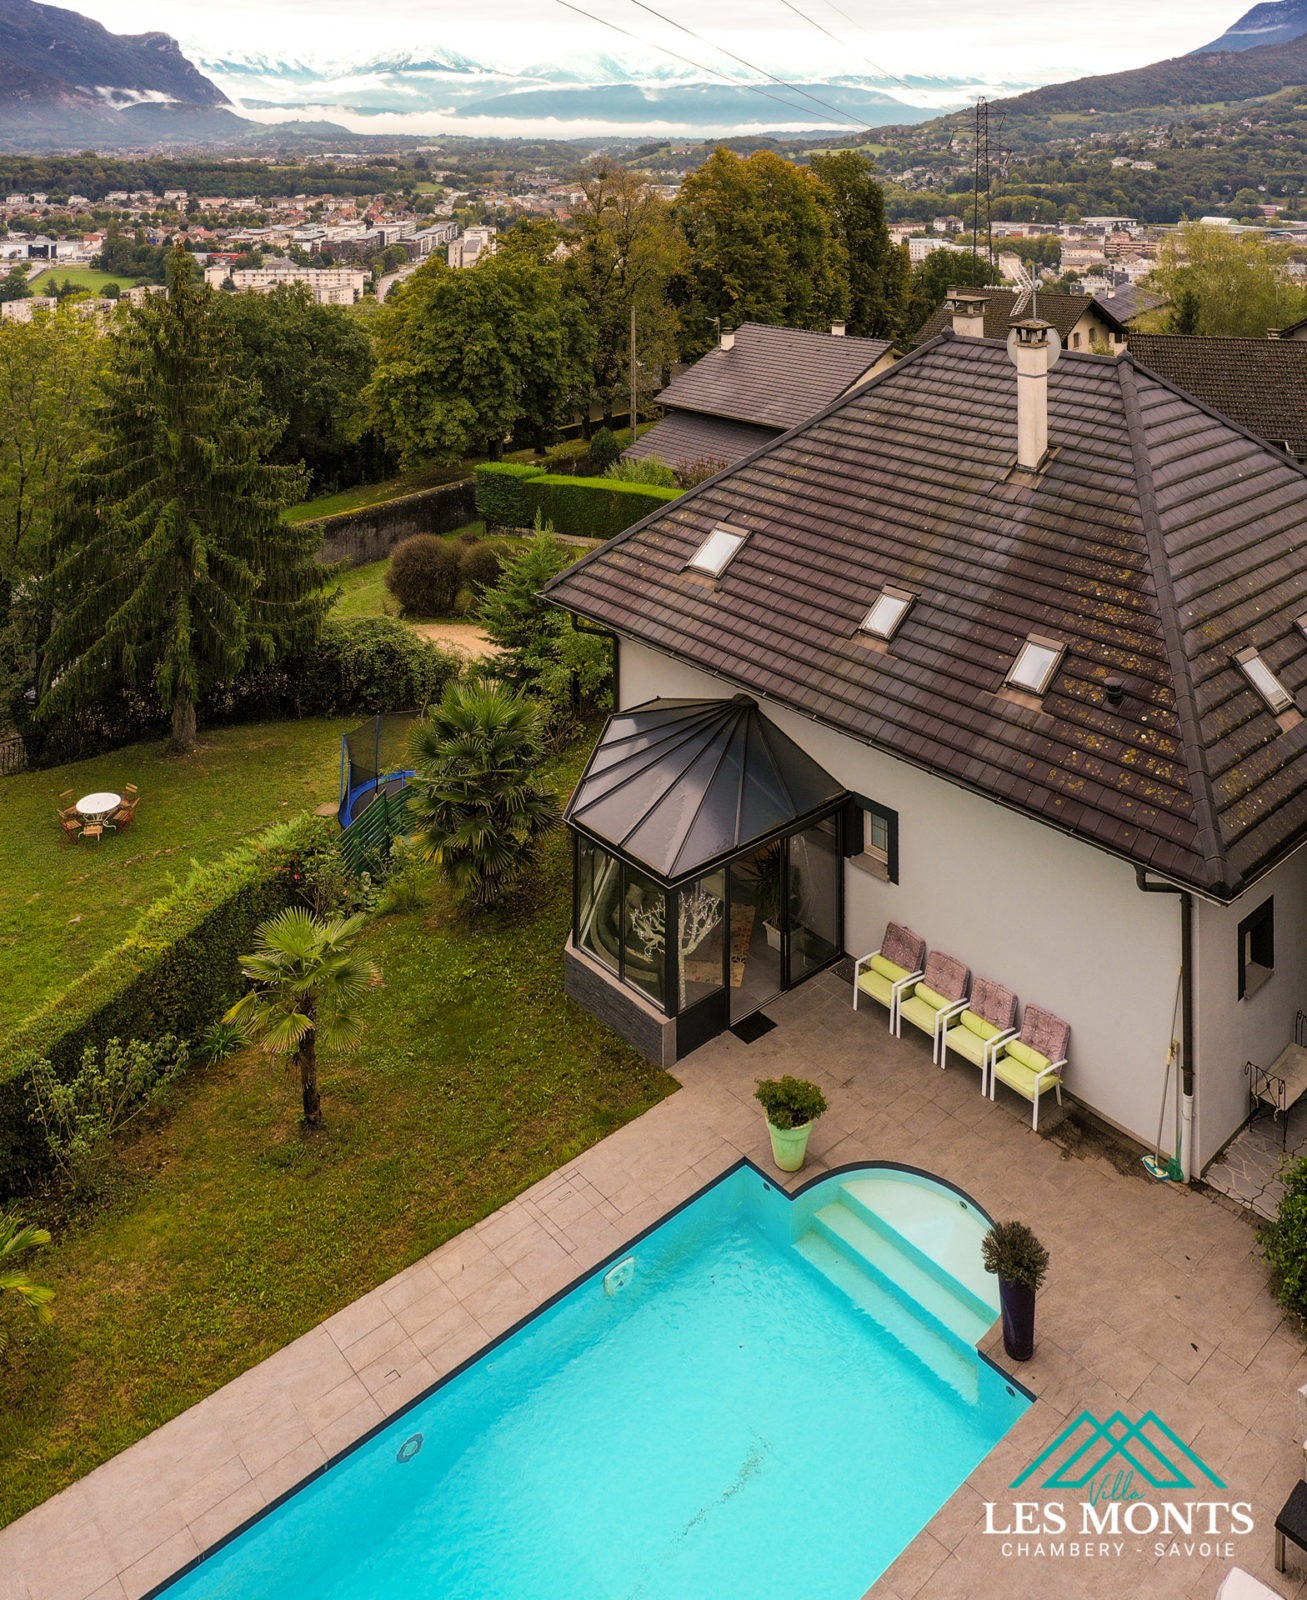 Prise de vue photo aérienne immobilière par drone - Chambéry Savoie